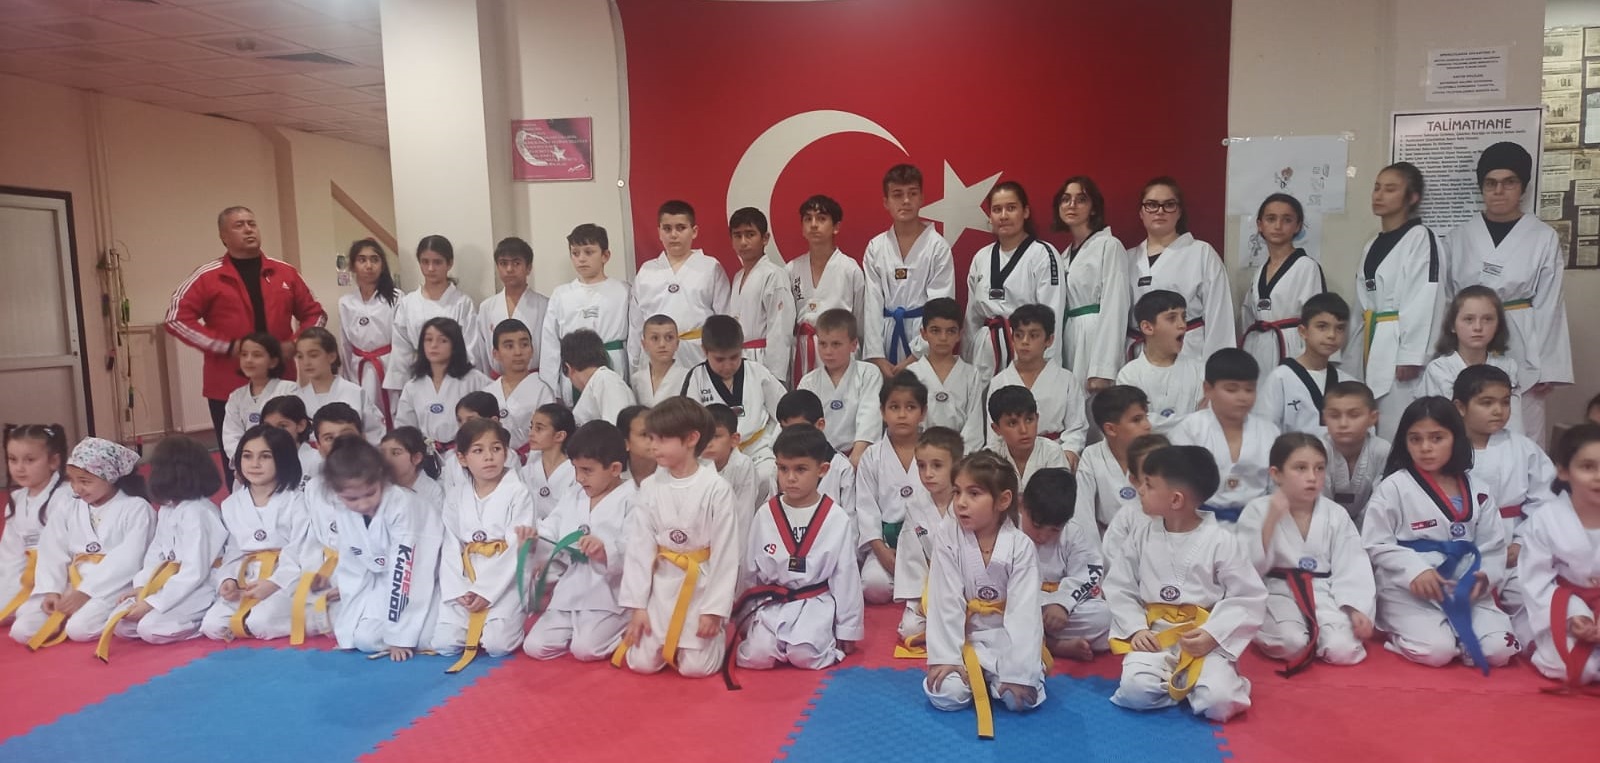 Taekwondocular Kuşak Sınavında Ter Döktü